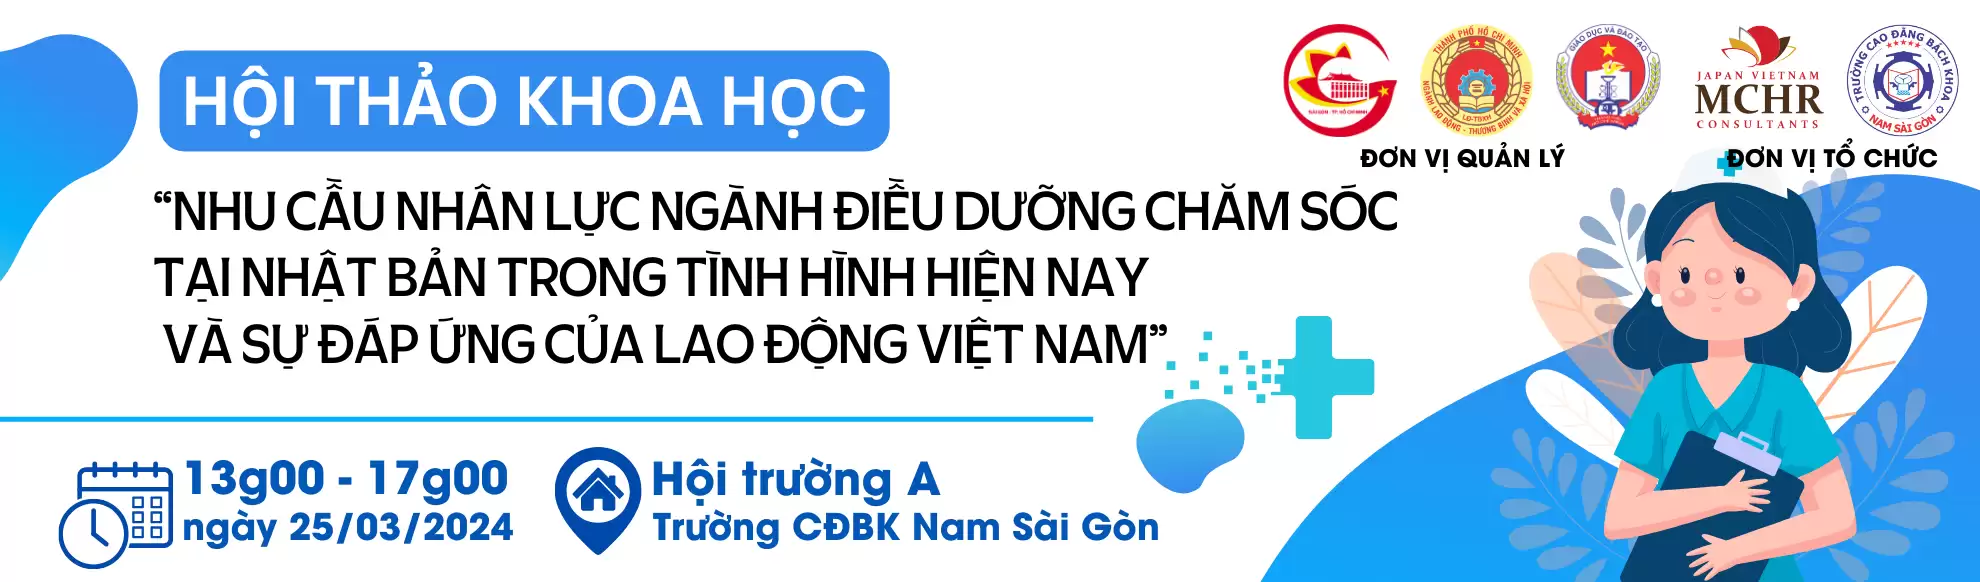 Kế hoạch phối hợp công ty TNHH MCHR Nhật Việt, Tập đoàn Aoyama – Nhật bản tổ chức các hoạt động hợp tác đào tạo